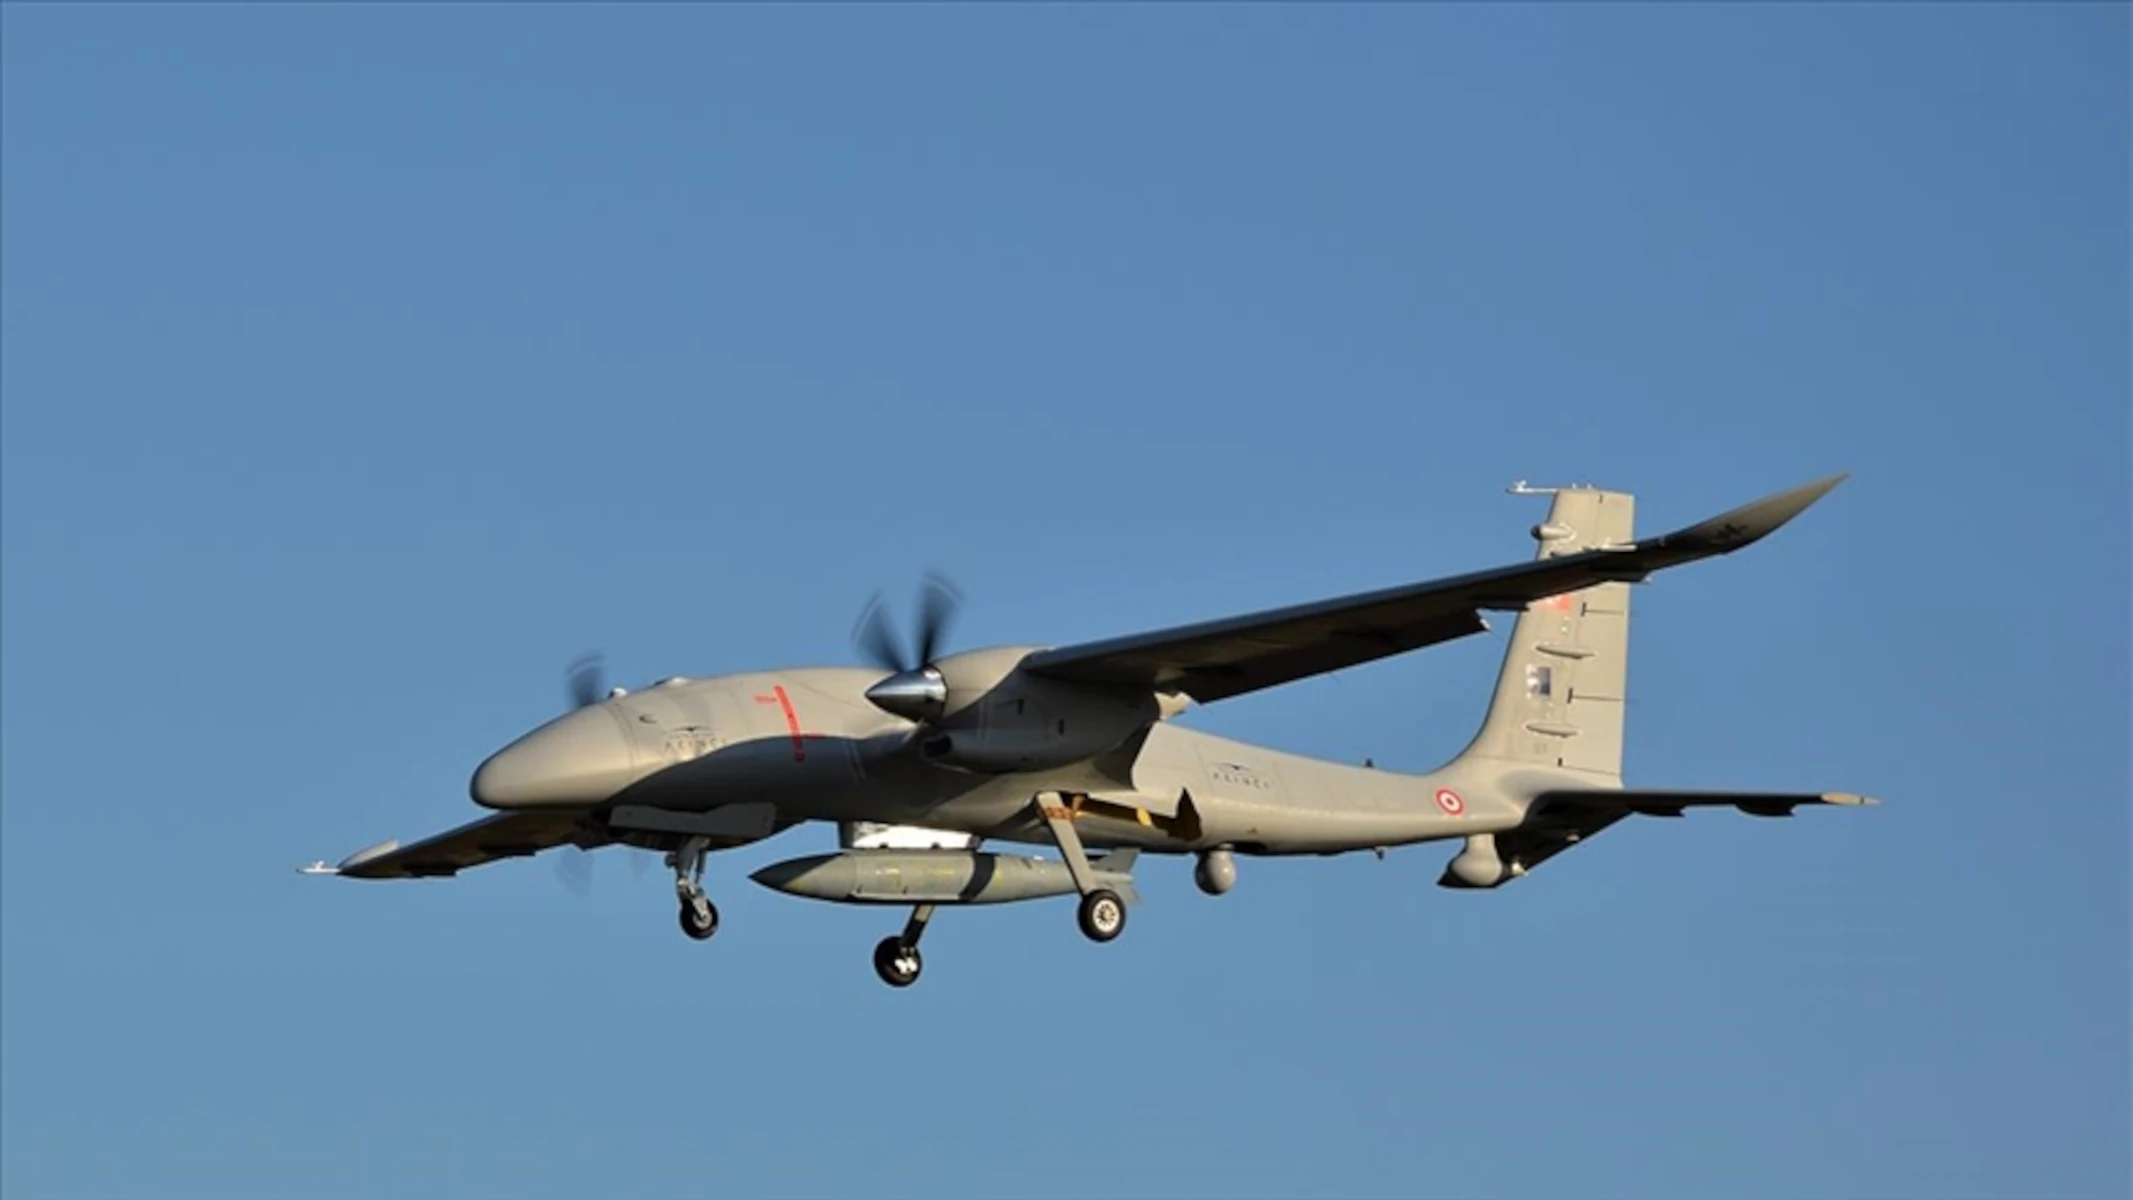 Le drone de frappe Bayraktar AKINCI avec moteur ukrainien participe pour la première fois à des exercices internationaux impliquant des éléments de l'OTAN